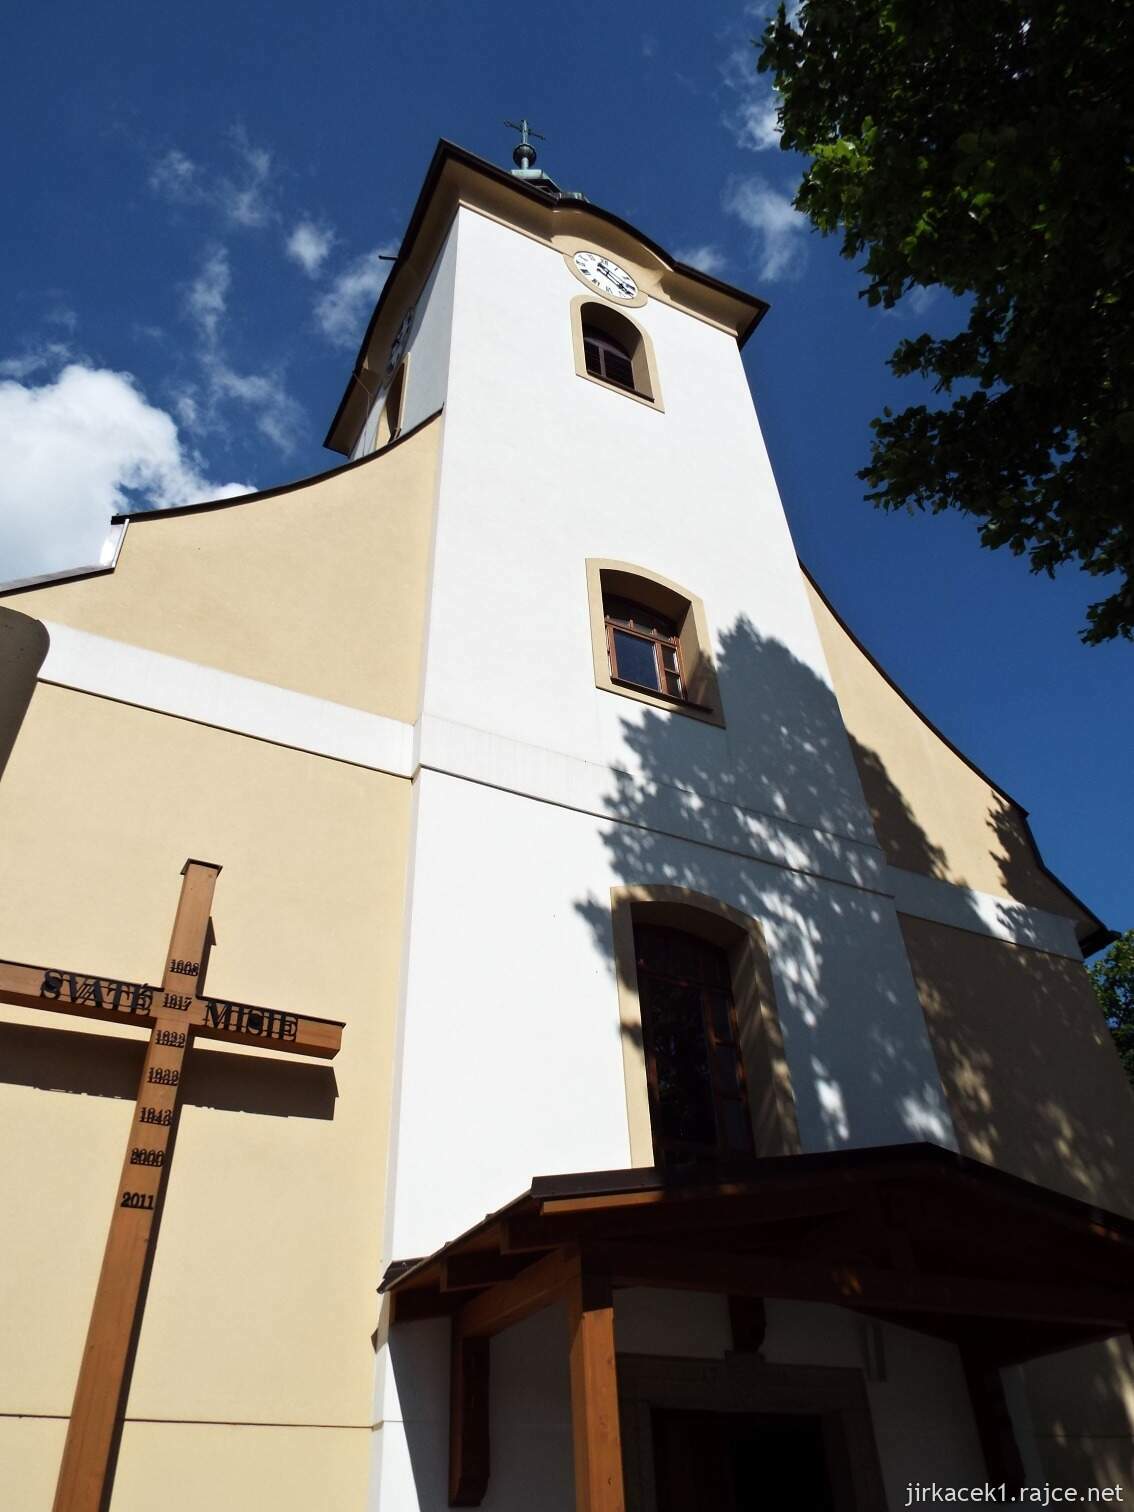 017 - Nový Hrozenkov - kostel sv. Jana Křtitele 06 - věž